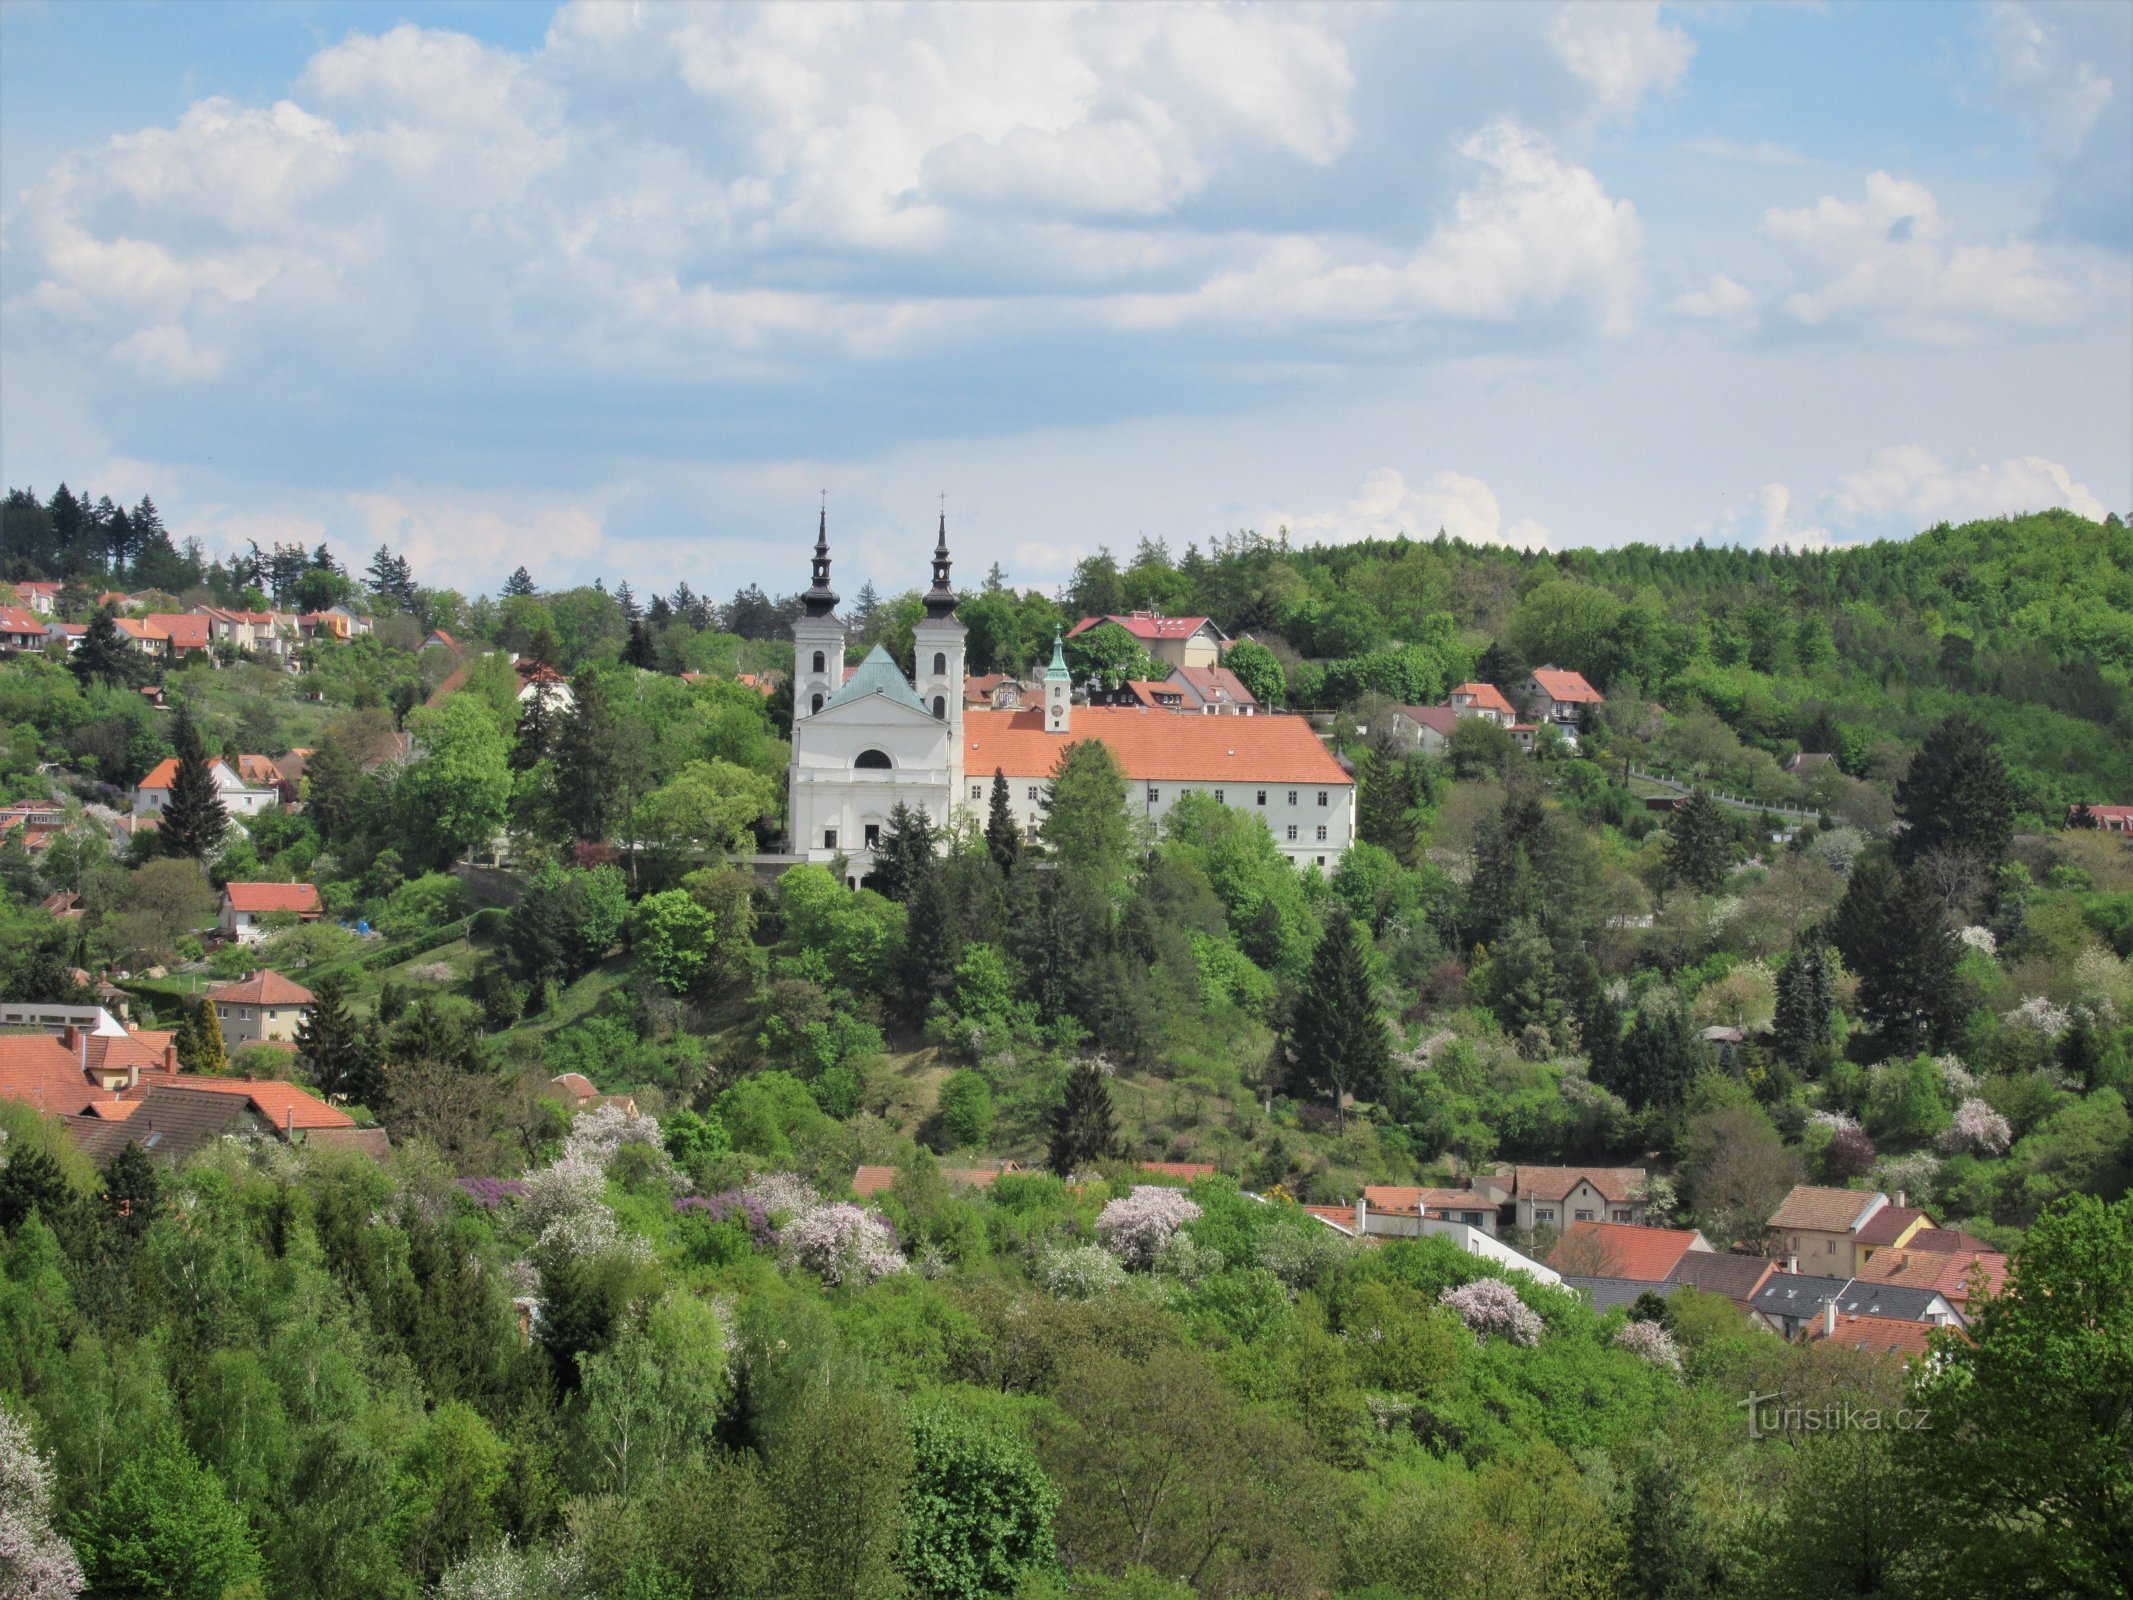 Vranov gần Brno - quang cảnh ngôi làng